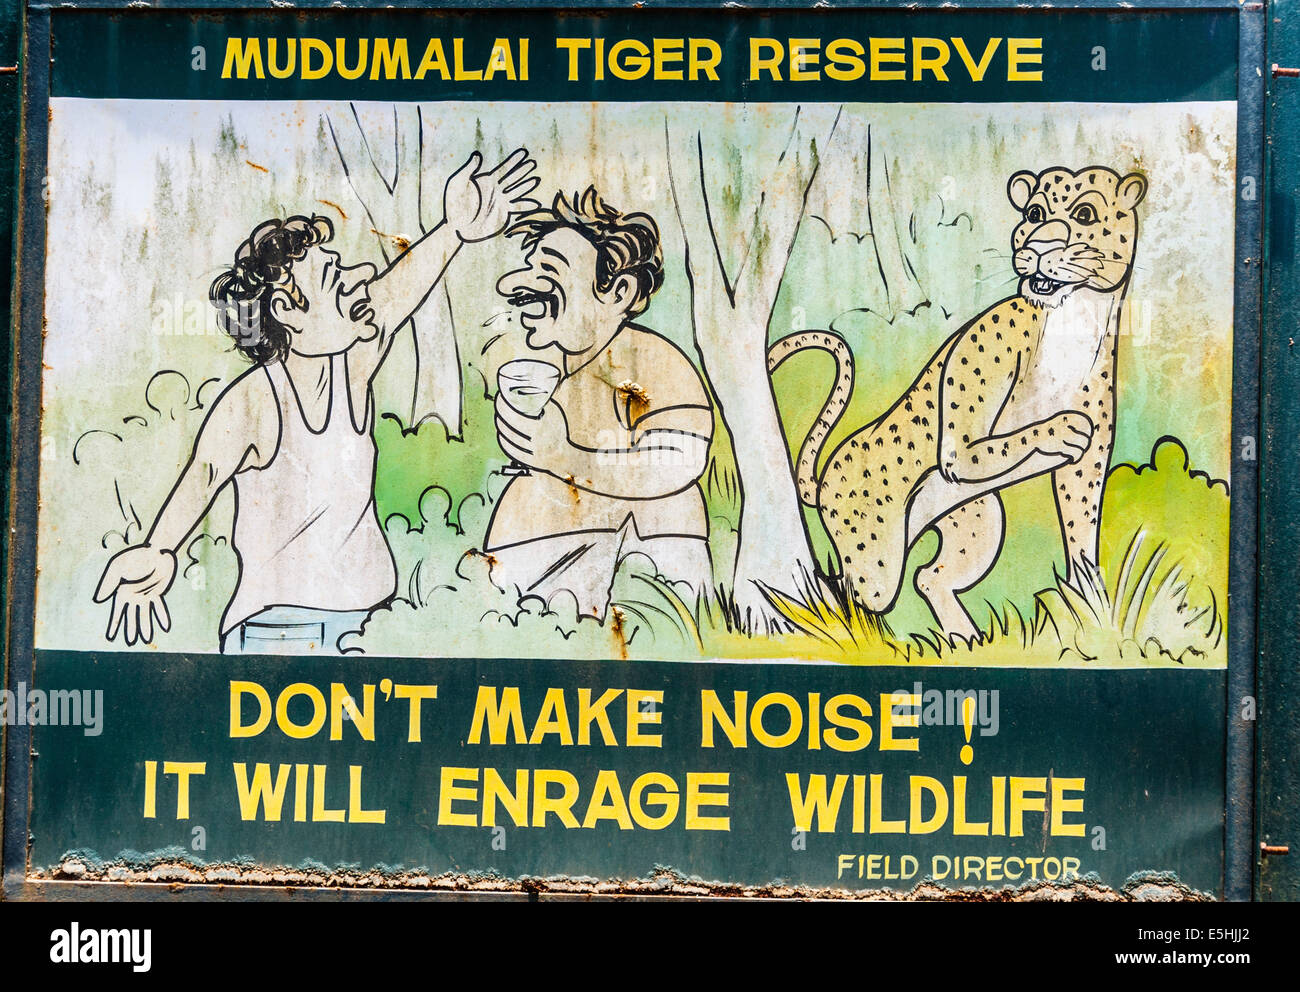 'No hacer ruido!" cartoon signo, Mudumalai Santuario de Vida Silvestre, Tamil Nadu, India Foto de stock